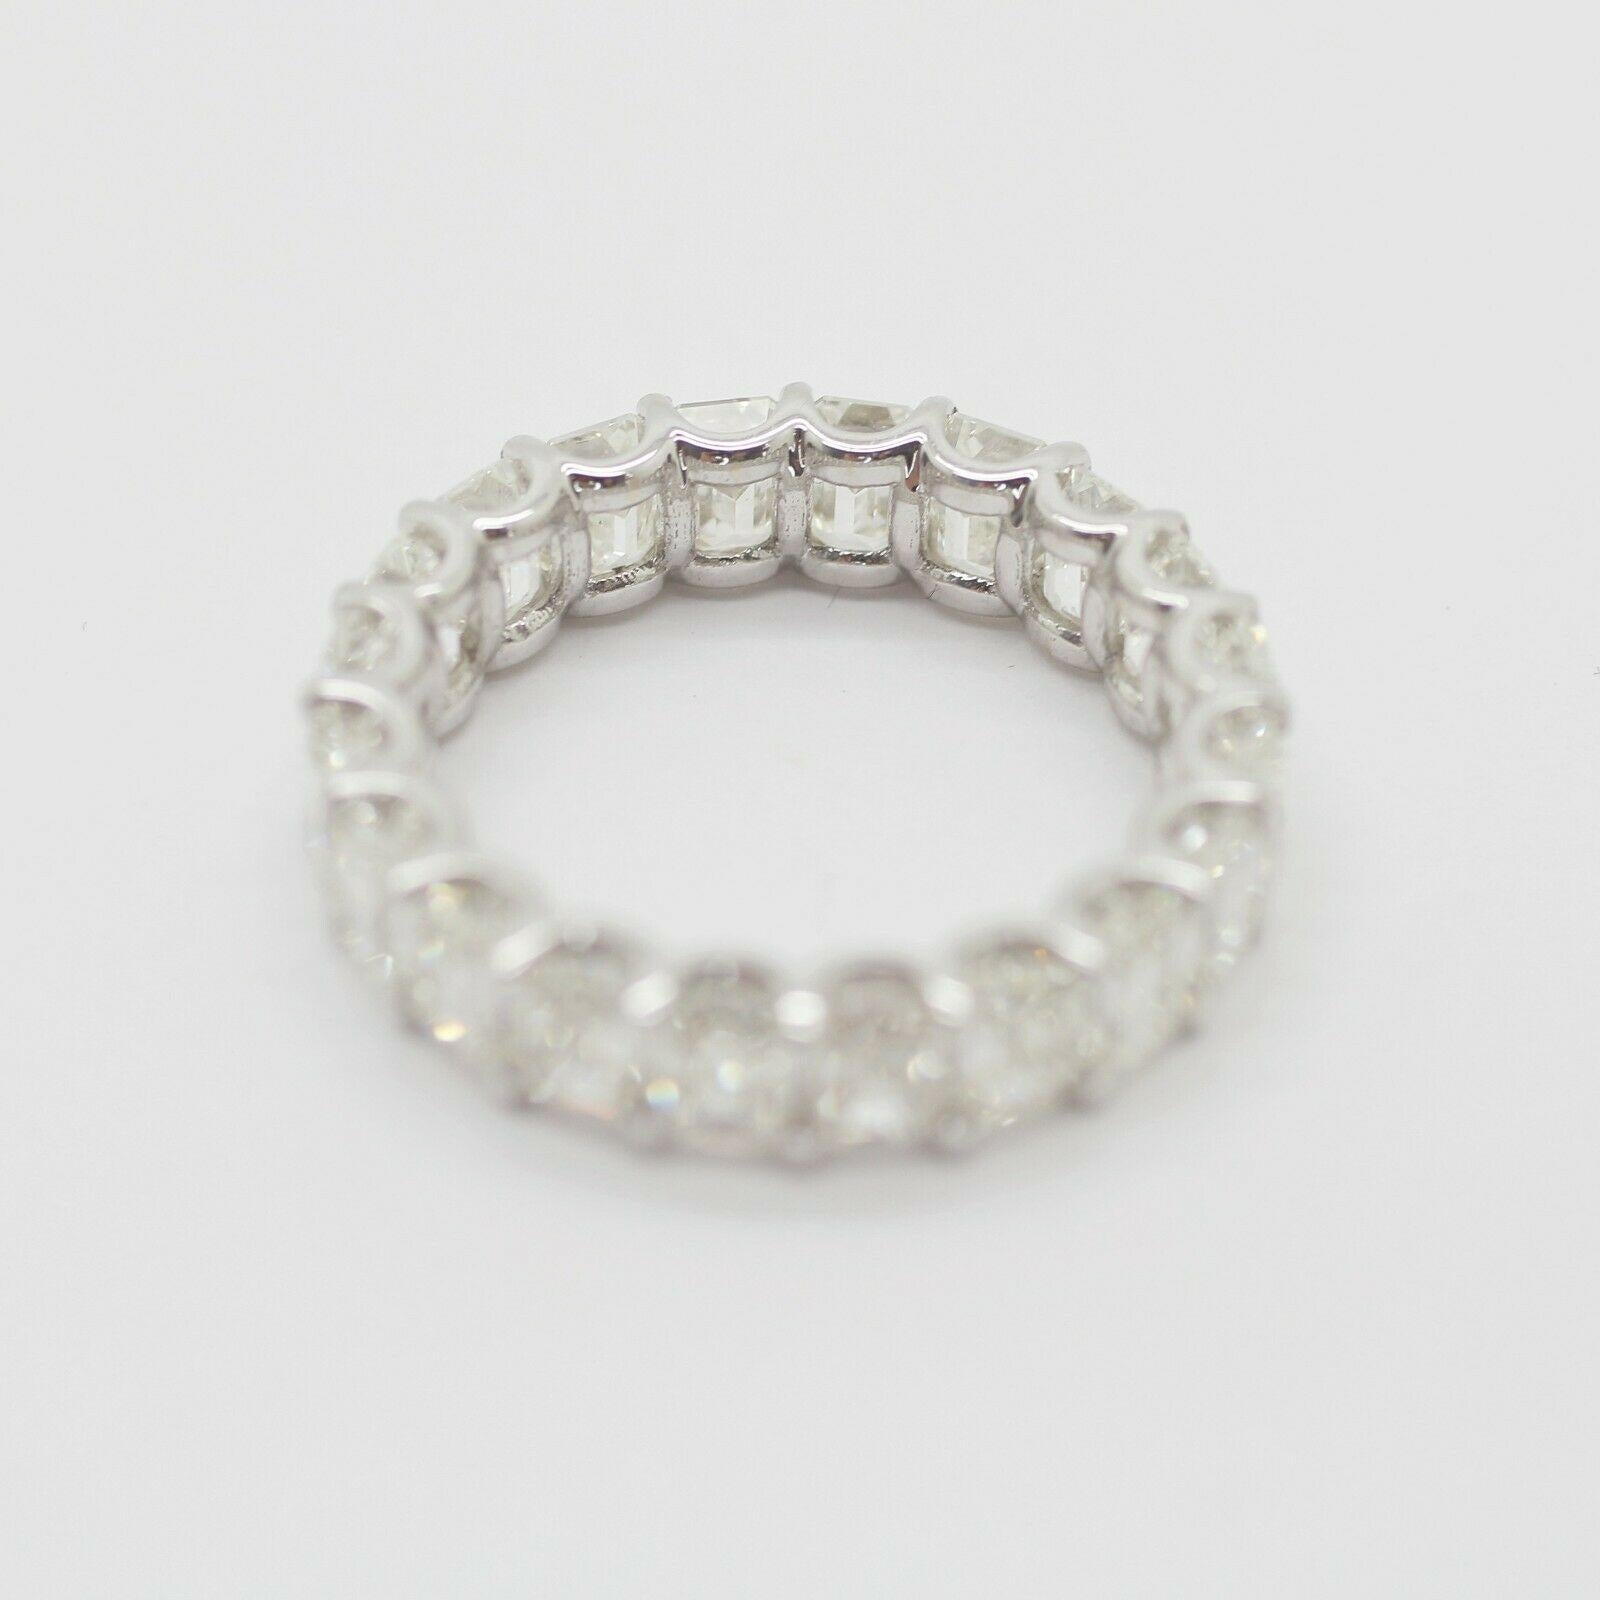 Women's or Men's GIA Certified Emerald Cut Diamond Eternity Ring 6.05 Carats Set in 14k WG